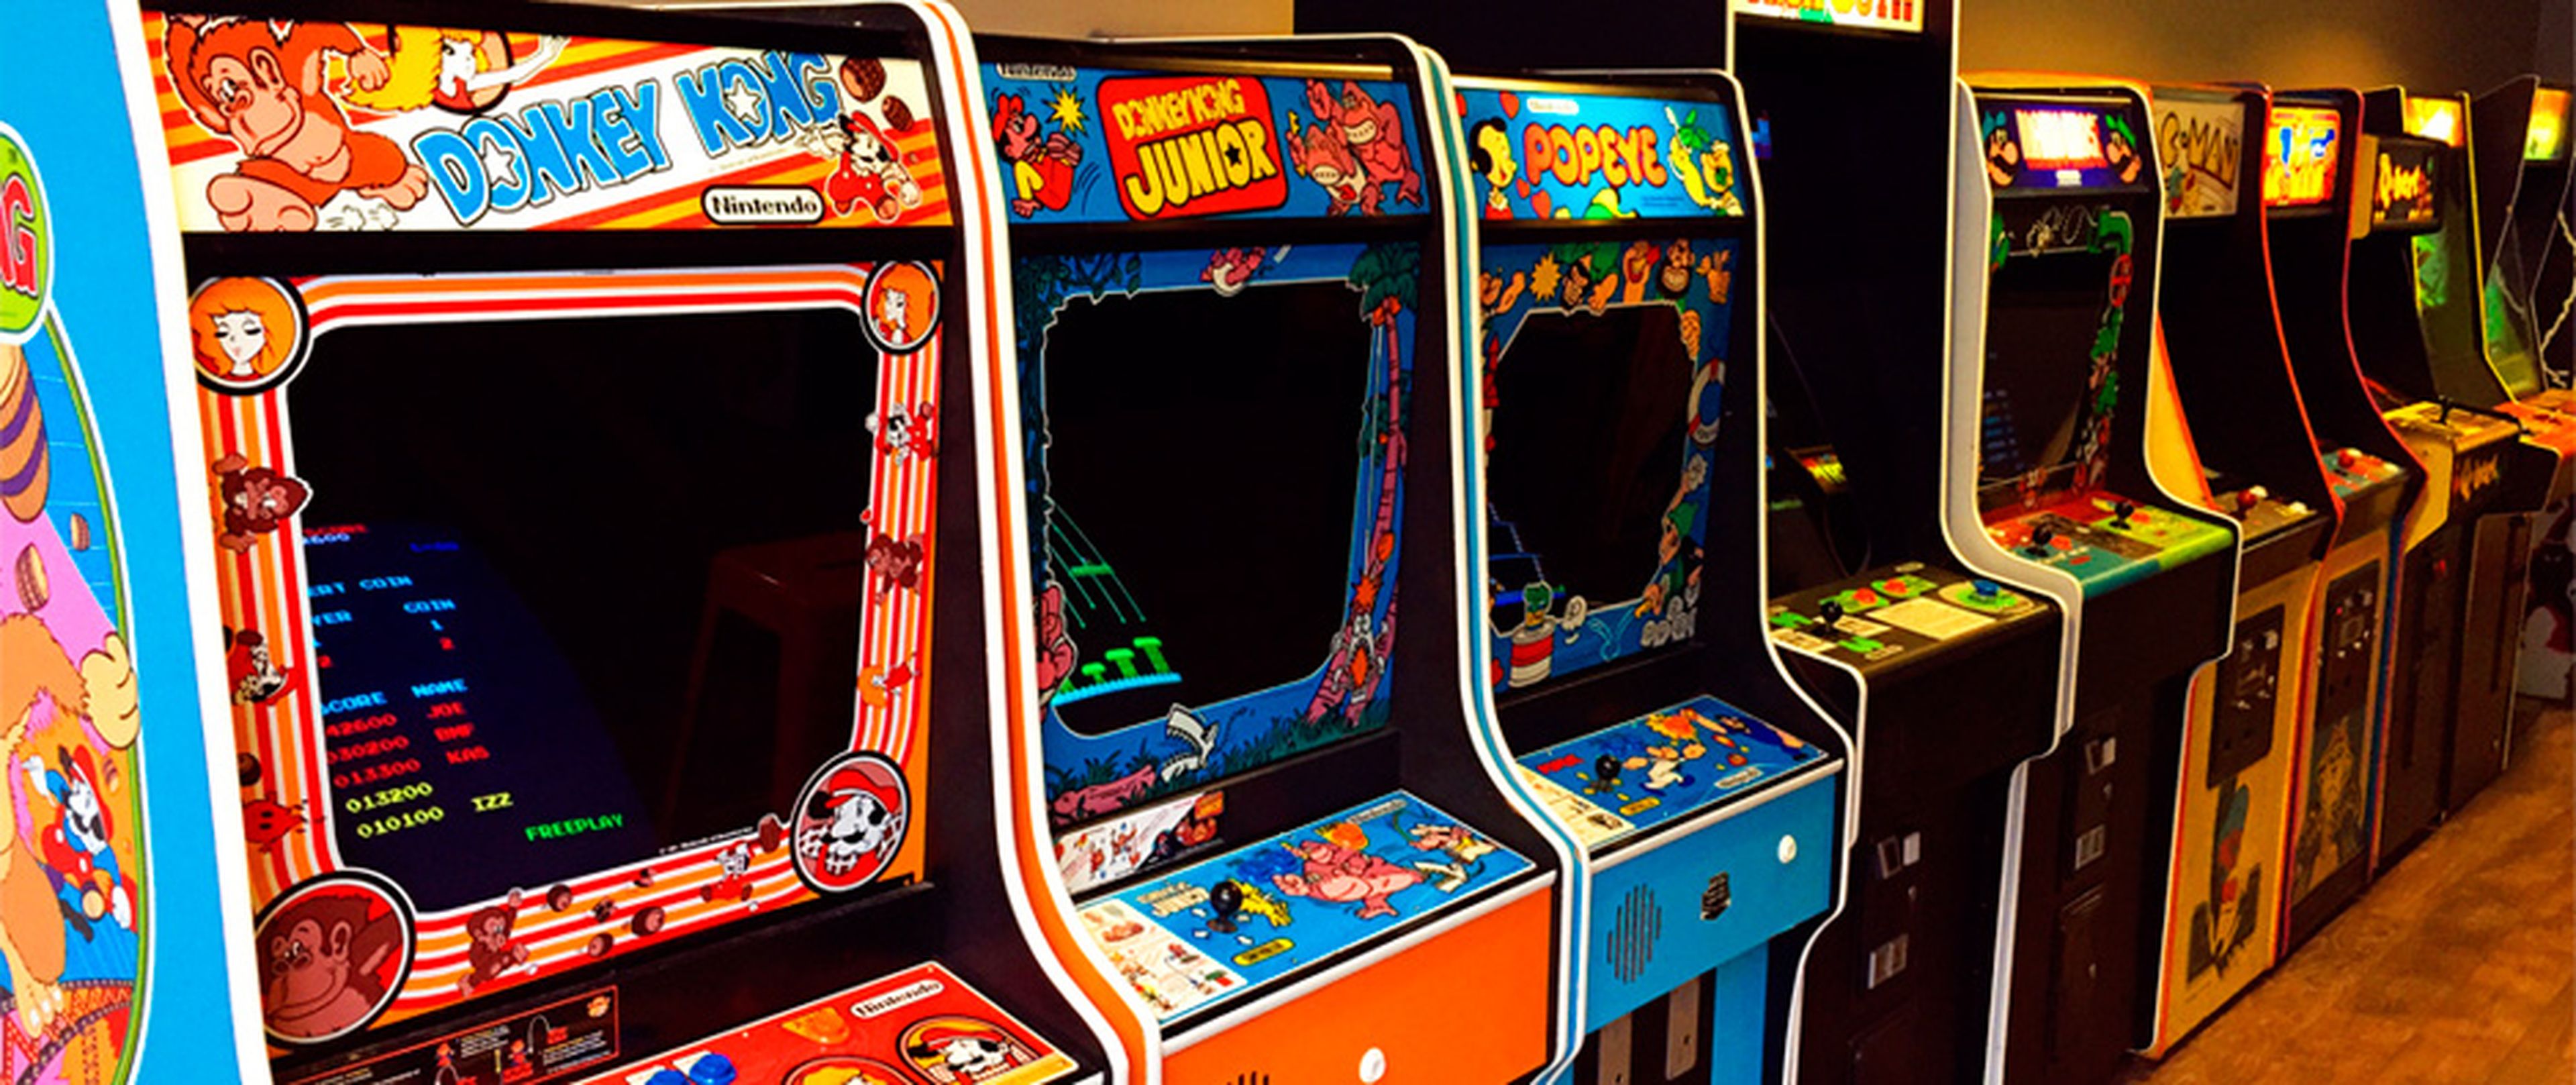 Juegos Arcade de los años 80